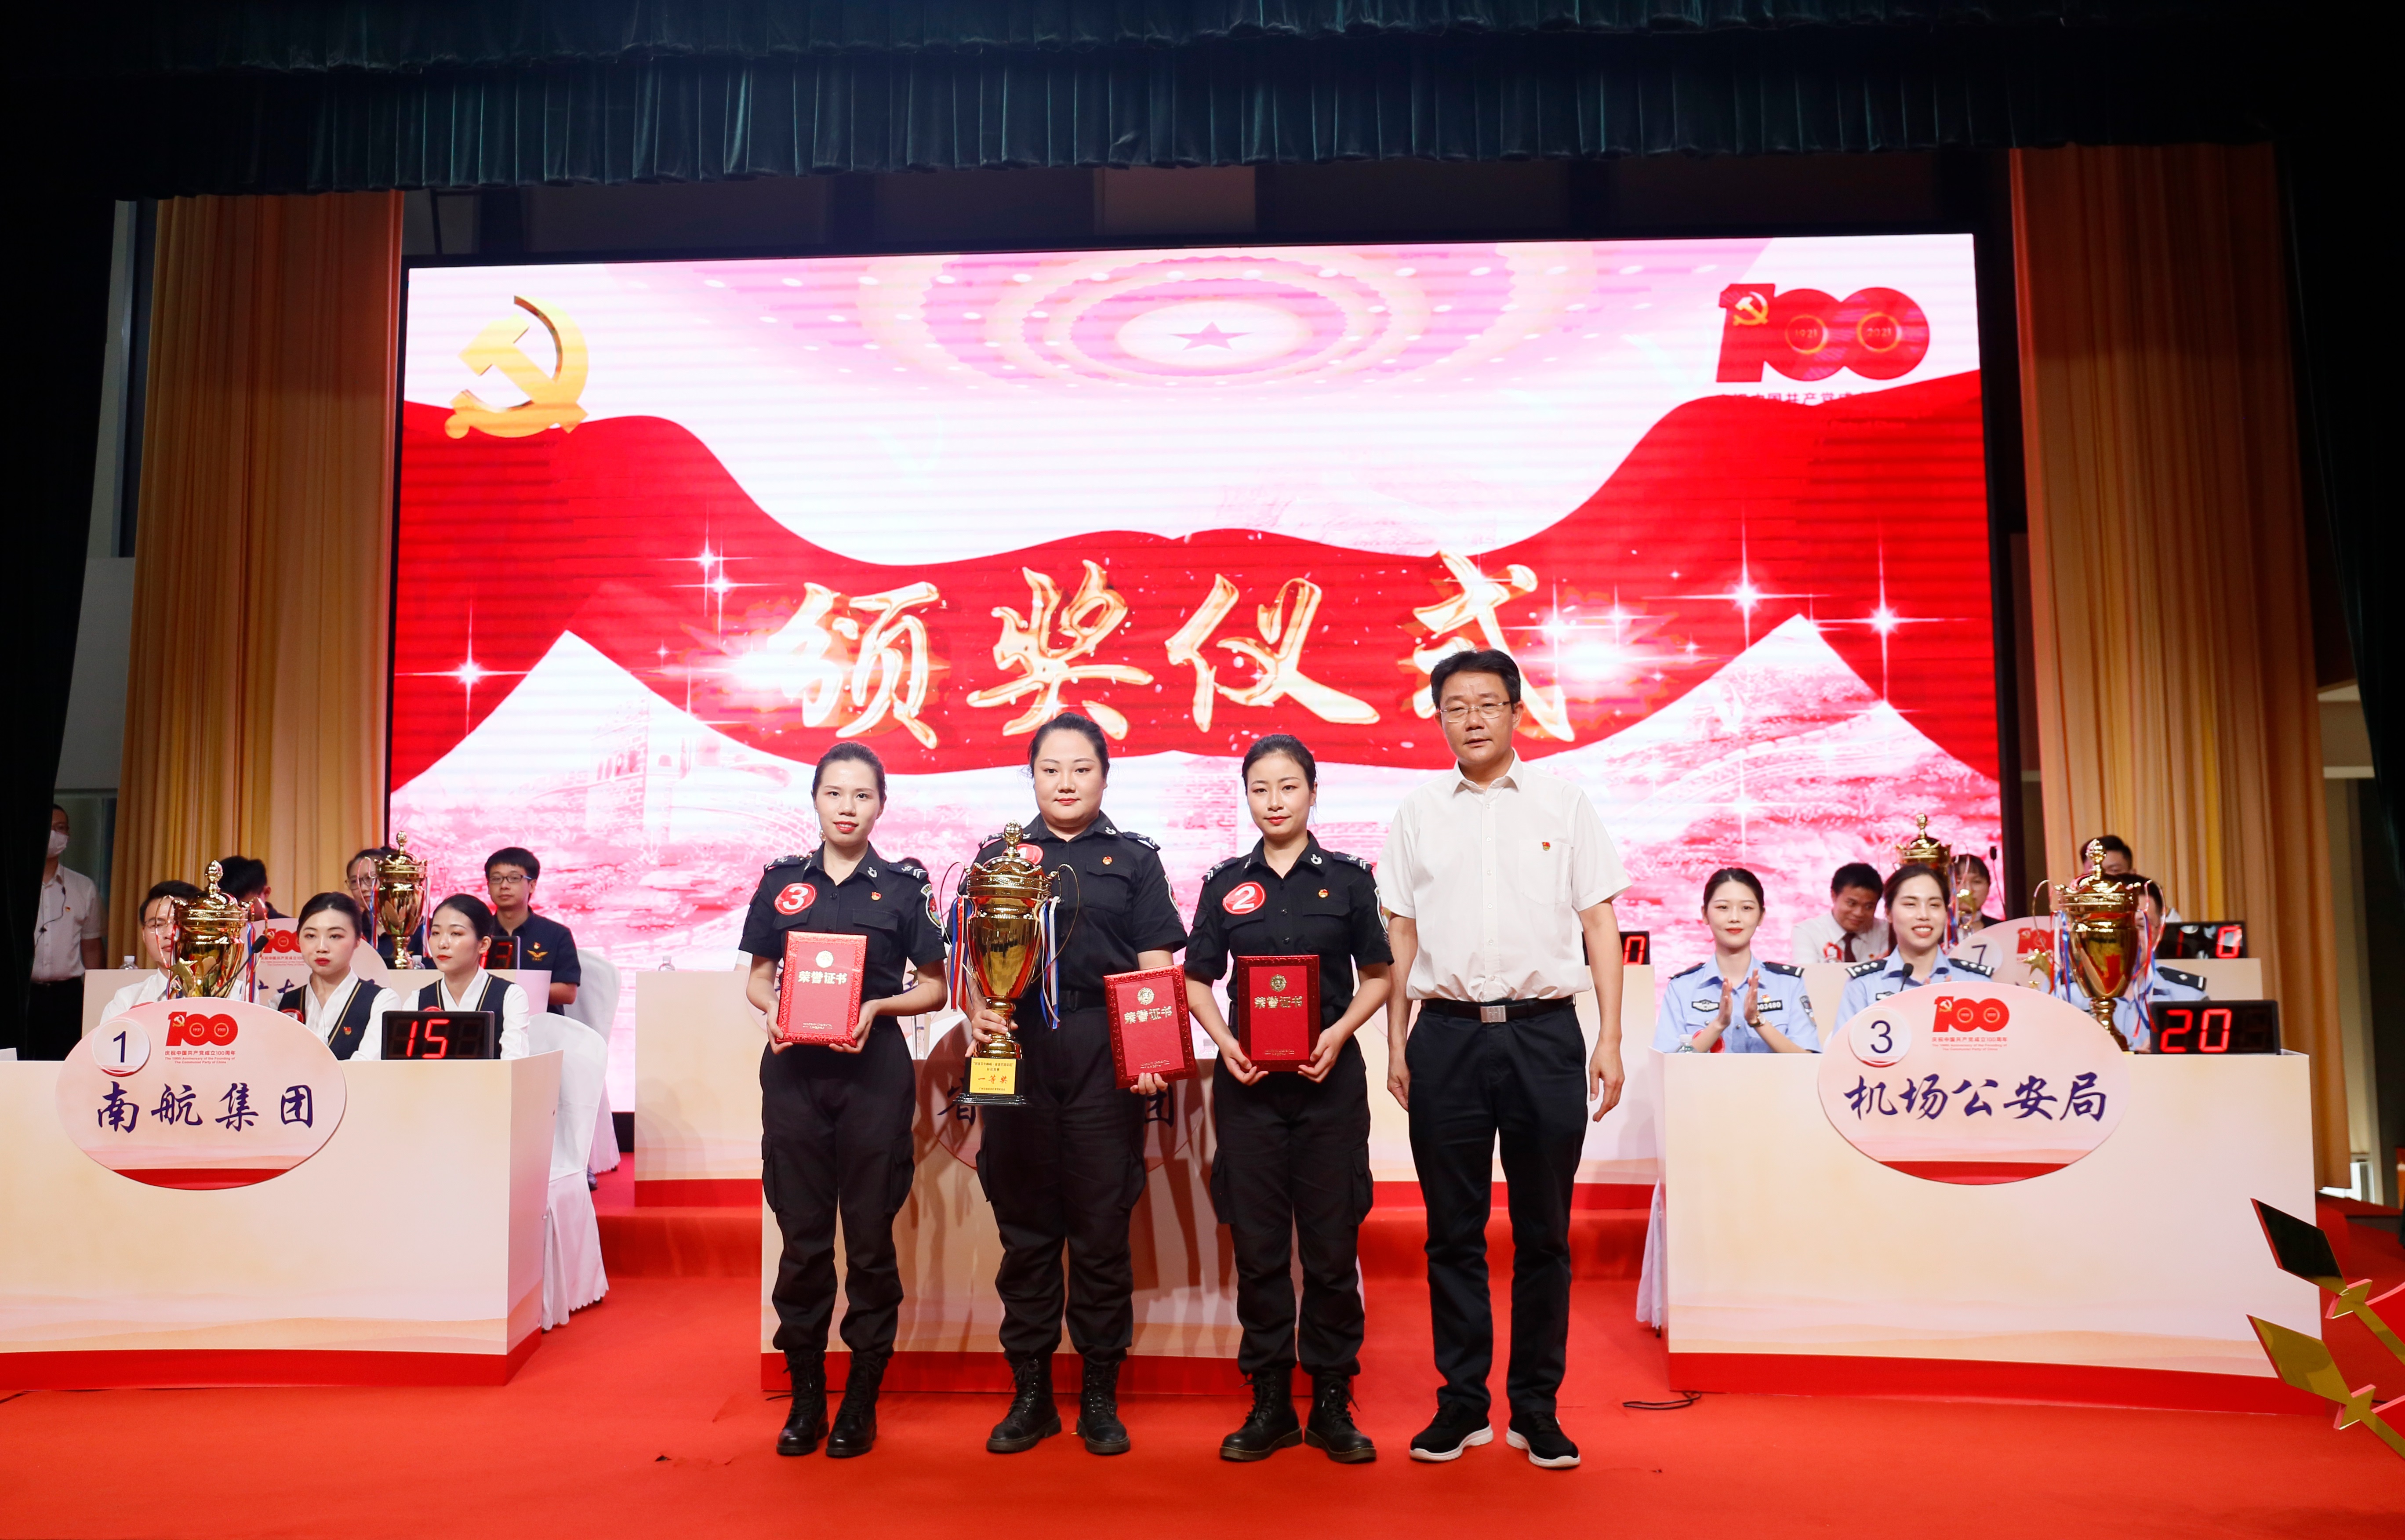 1 广东省机场管理集团有限公司参赛队获得团体优胜奖一等奖.jpg